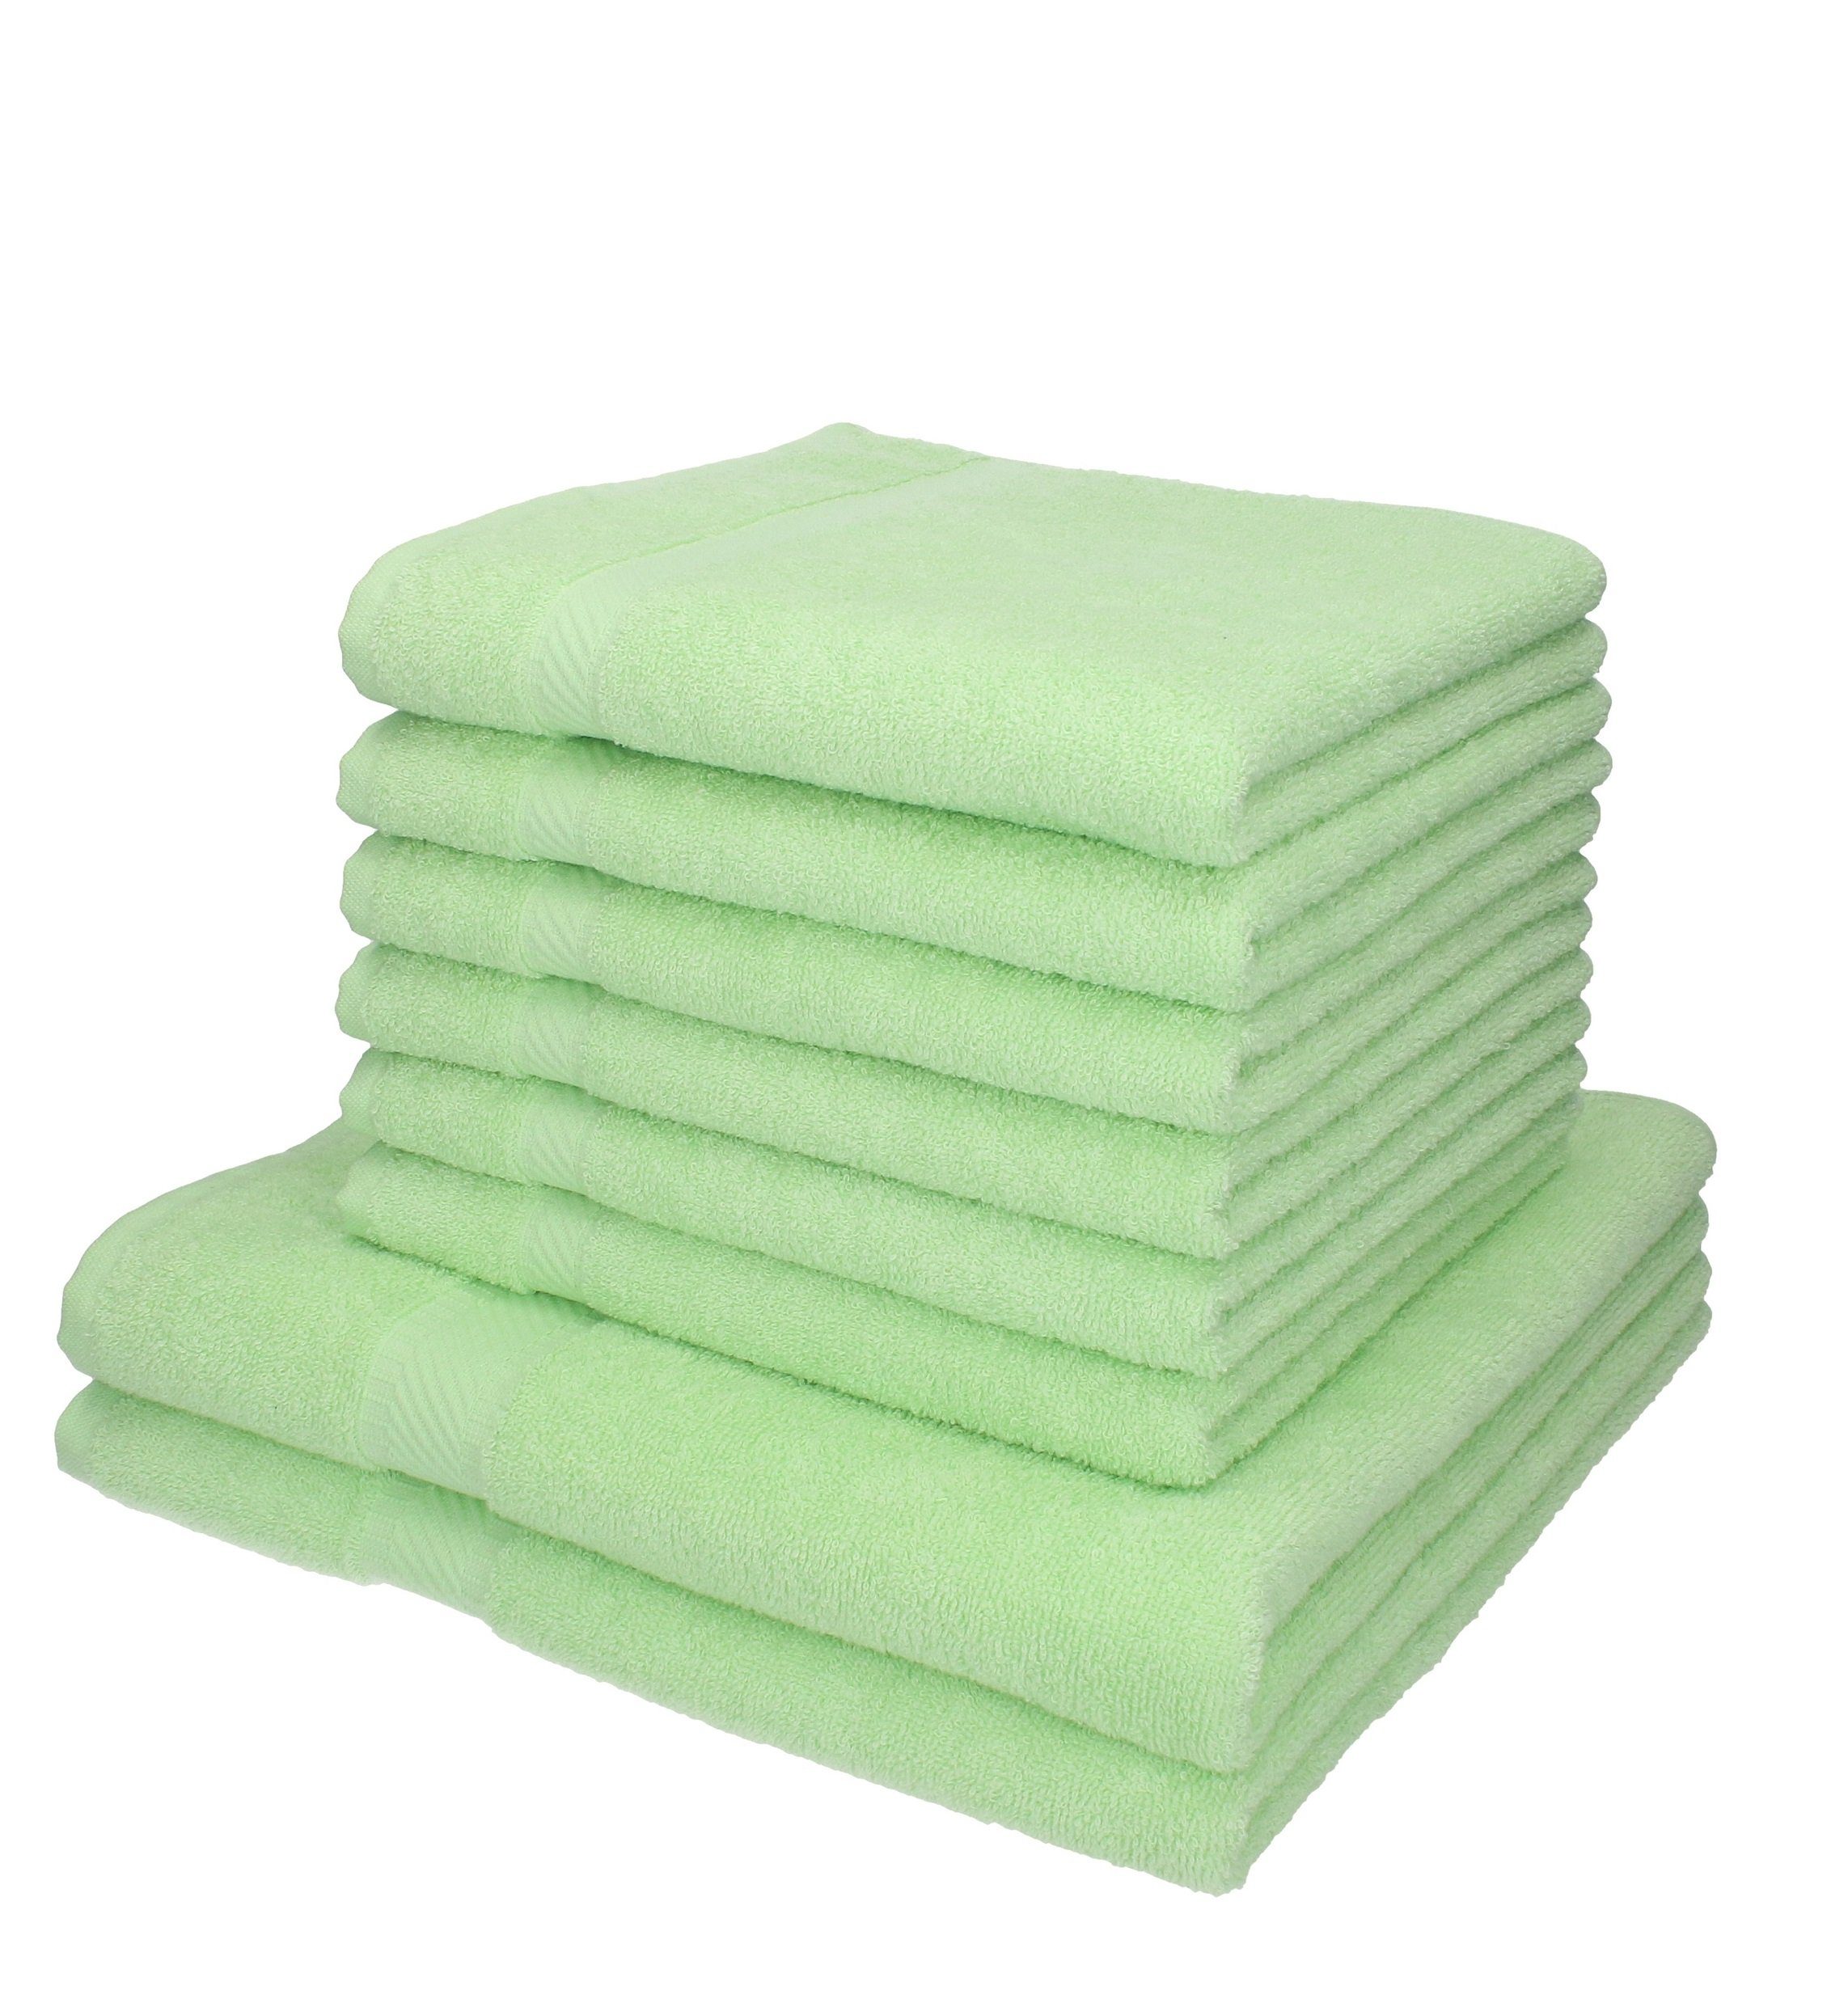 Betz Handtuch Set 8-TLG. Handtuch-Set Palermo Farbe grün, 100% Baumwolle | Handtuch-Sets